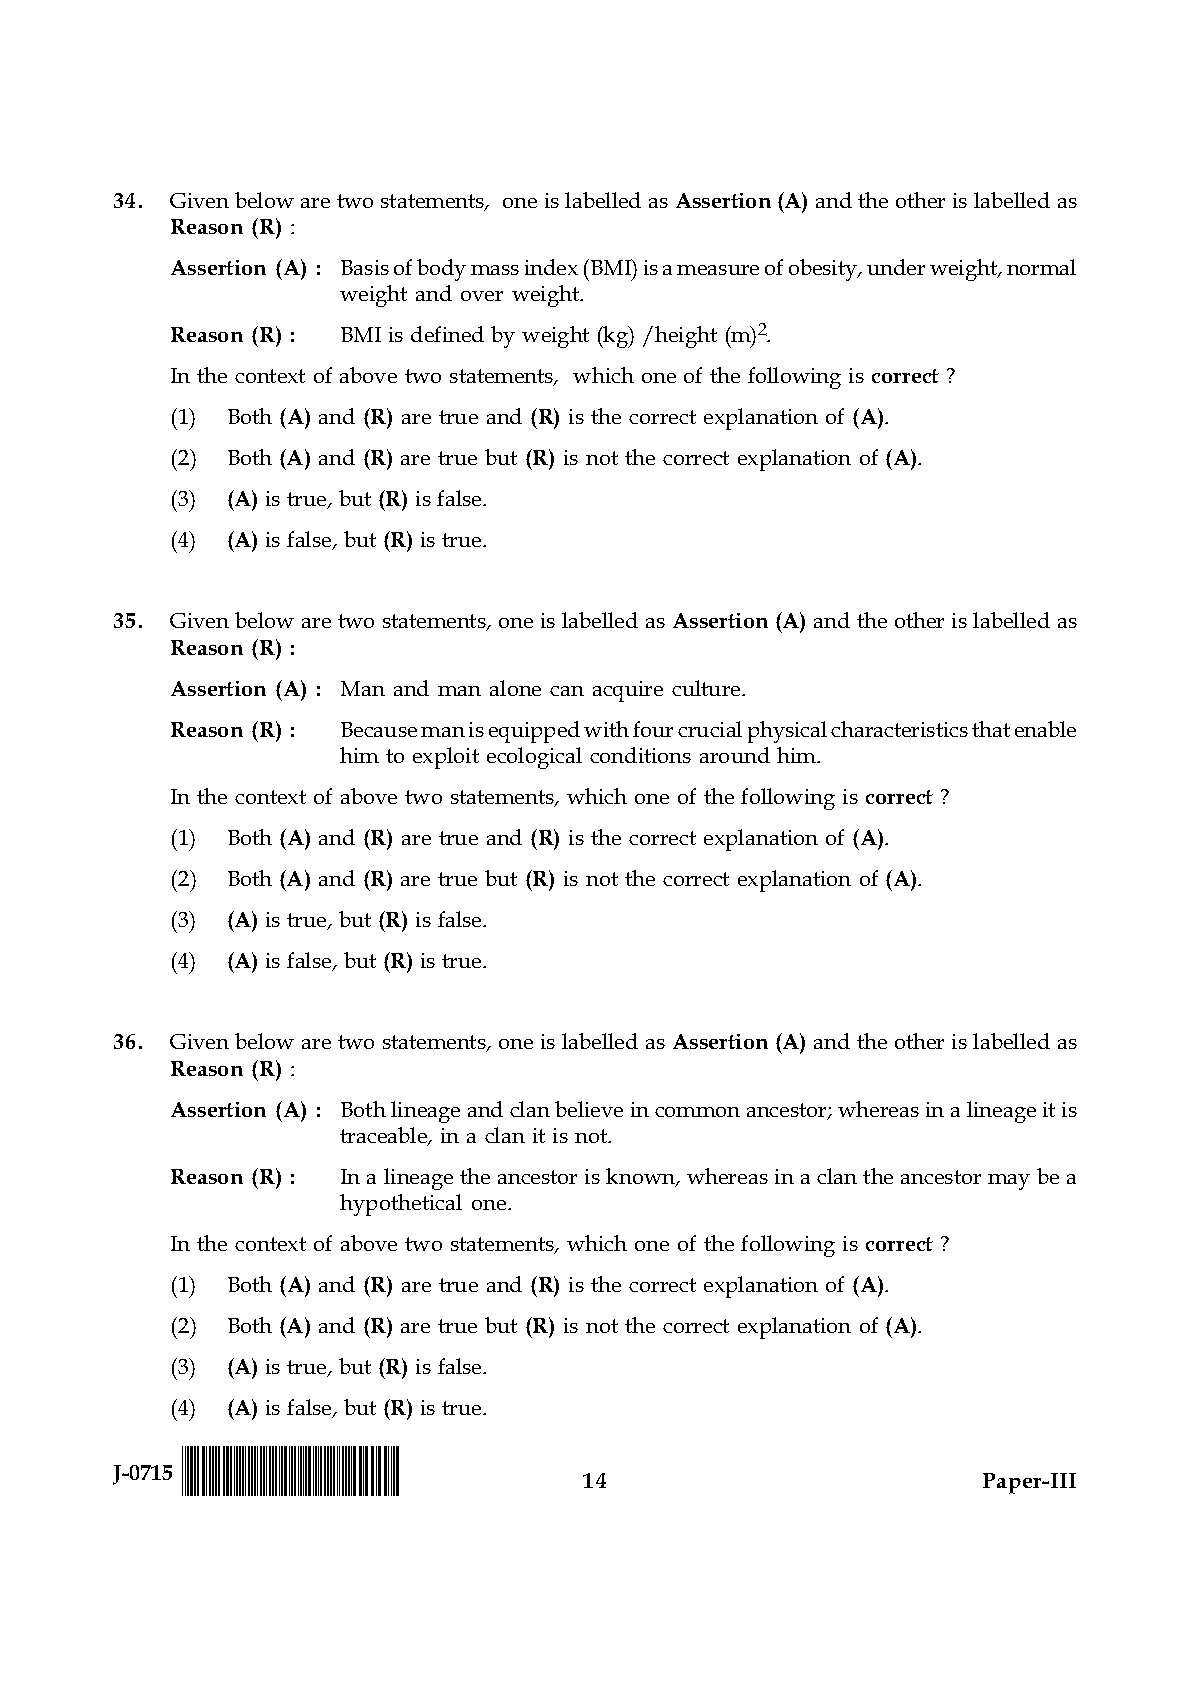 UGC NET Anthropology Question Paper III June 2015 14